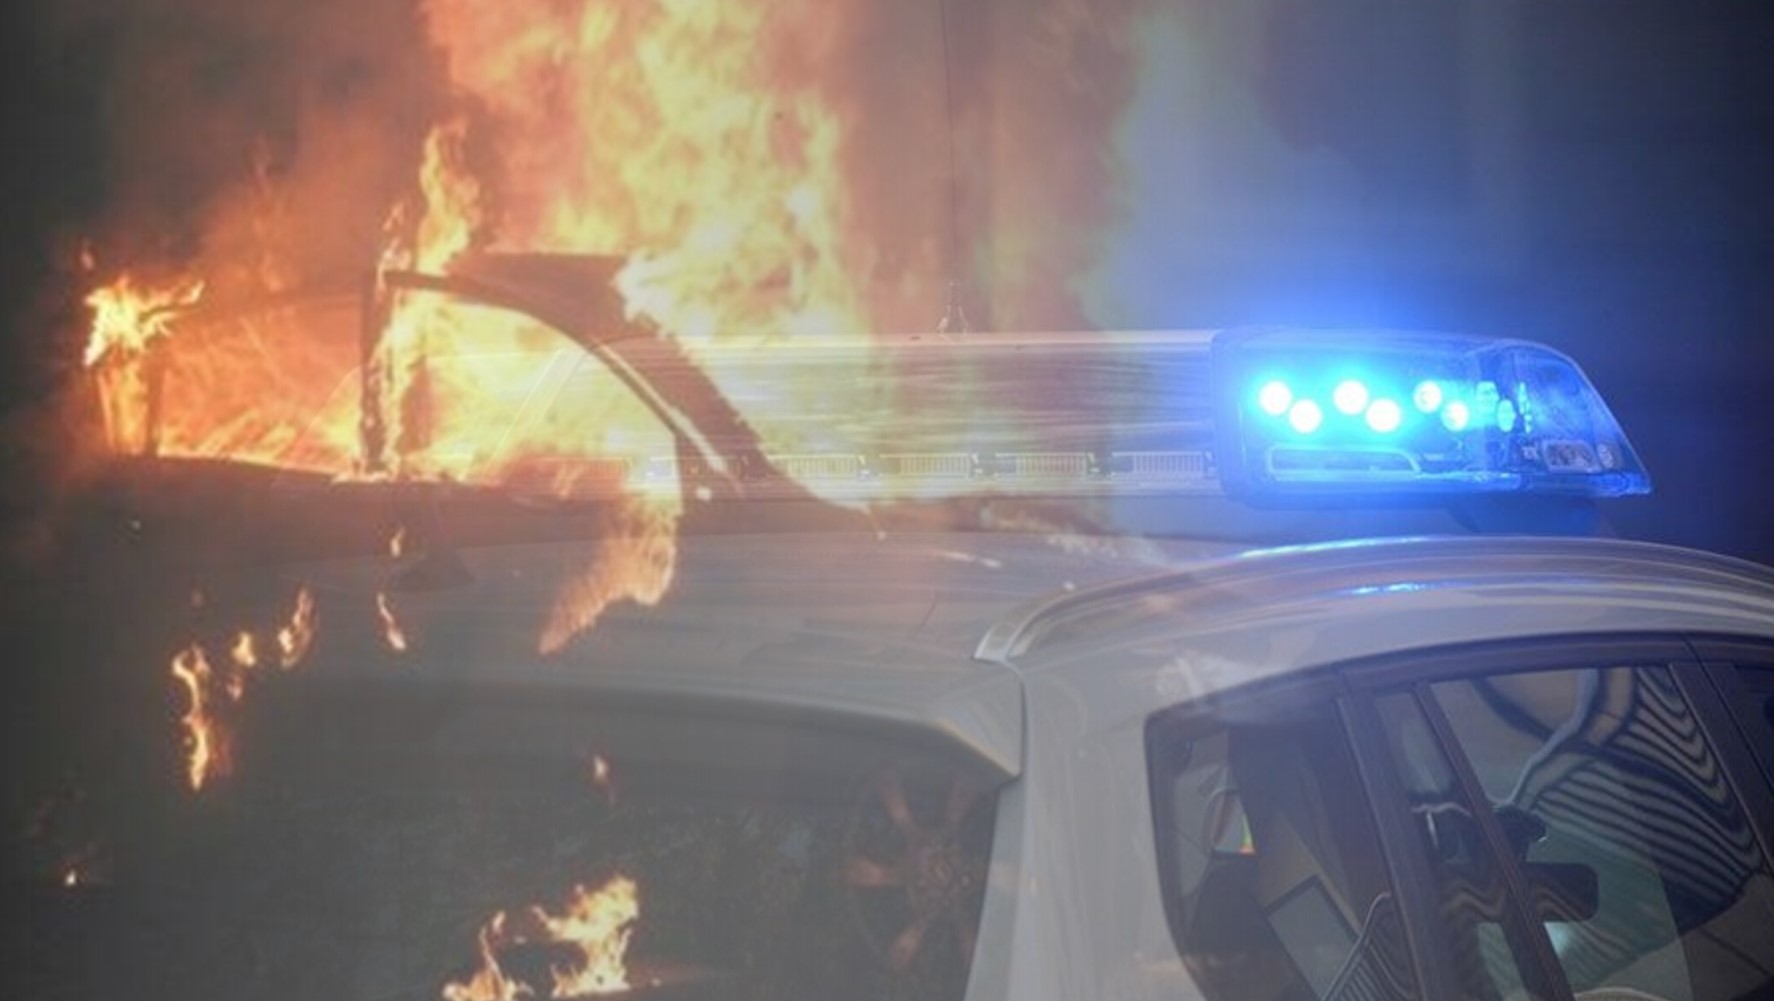 ΠΕΓΕΙΑ: Έκαψαν πολυτελές αυτοκίνητο κατάδικου στις Κεντρικές Φυλακές -Καταζητείται 38χρονος